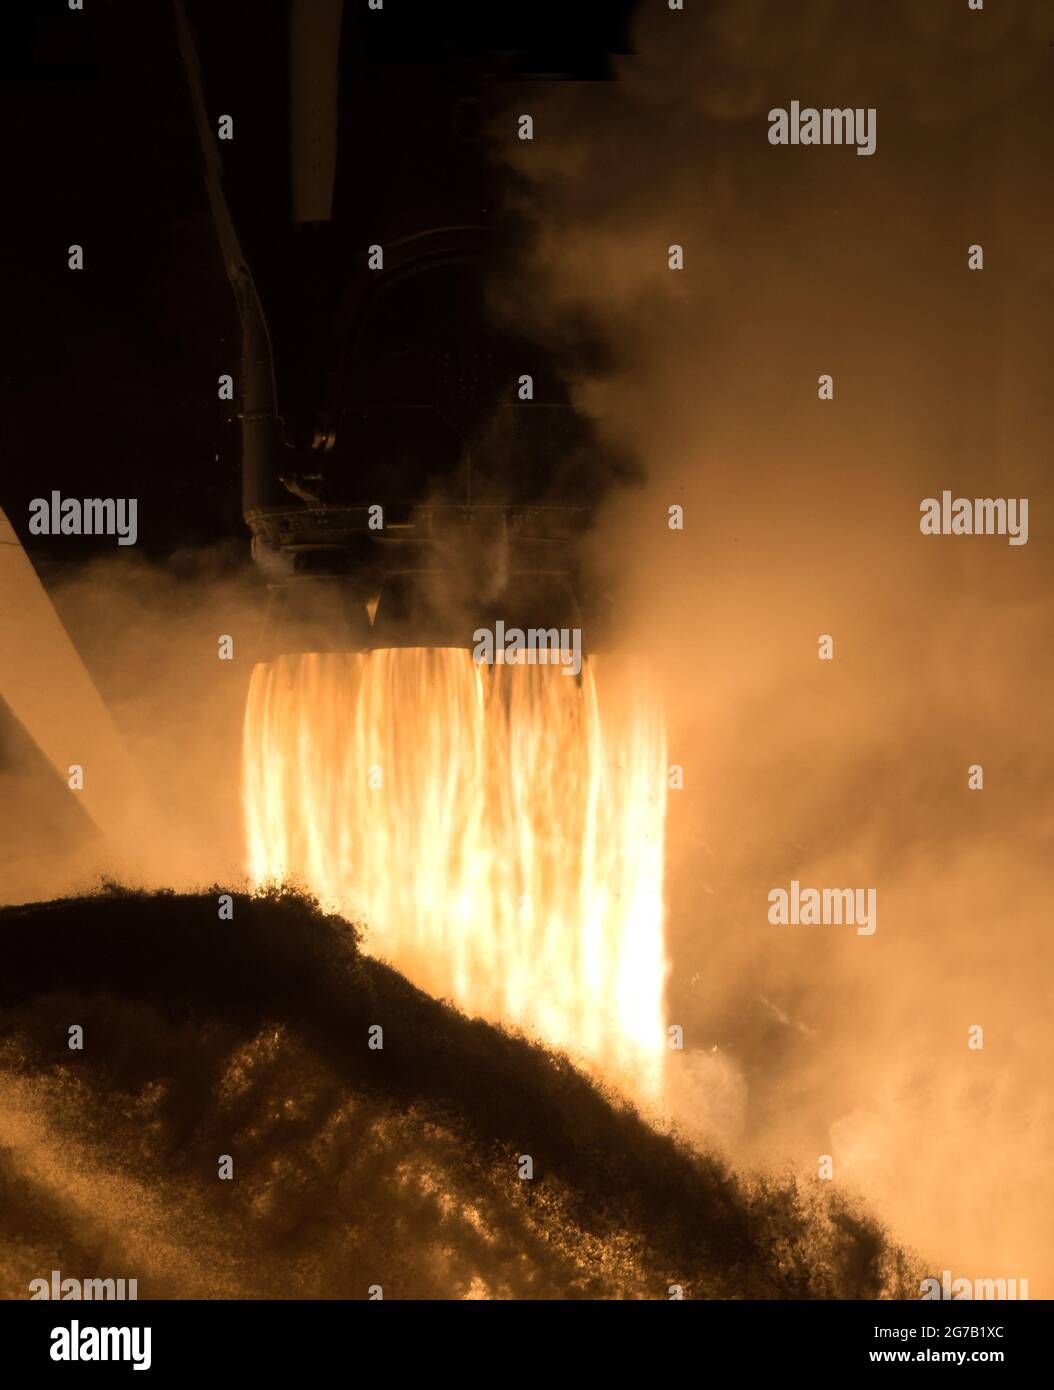 Eine SpaceX Falcon 9-Rakete, die das Raumschiff Crew Dragon des Unternehmens trägt, wird auf der NASA-Mission SpaceX Crew-1 zur Internationalen Raumstation gestartet. 15. November 2020, Kennedy Space Center in Florida. Eine einzigartige, optimierte und digital verbesserte Version eines NASA-Bildes von J Kowsky/ Credit NASA Stockfoto